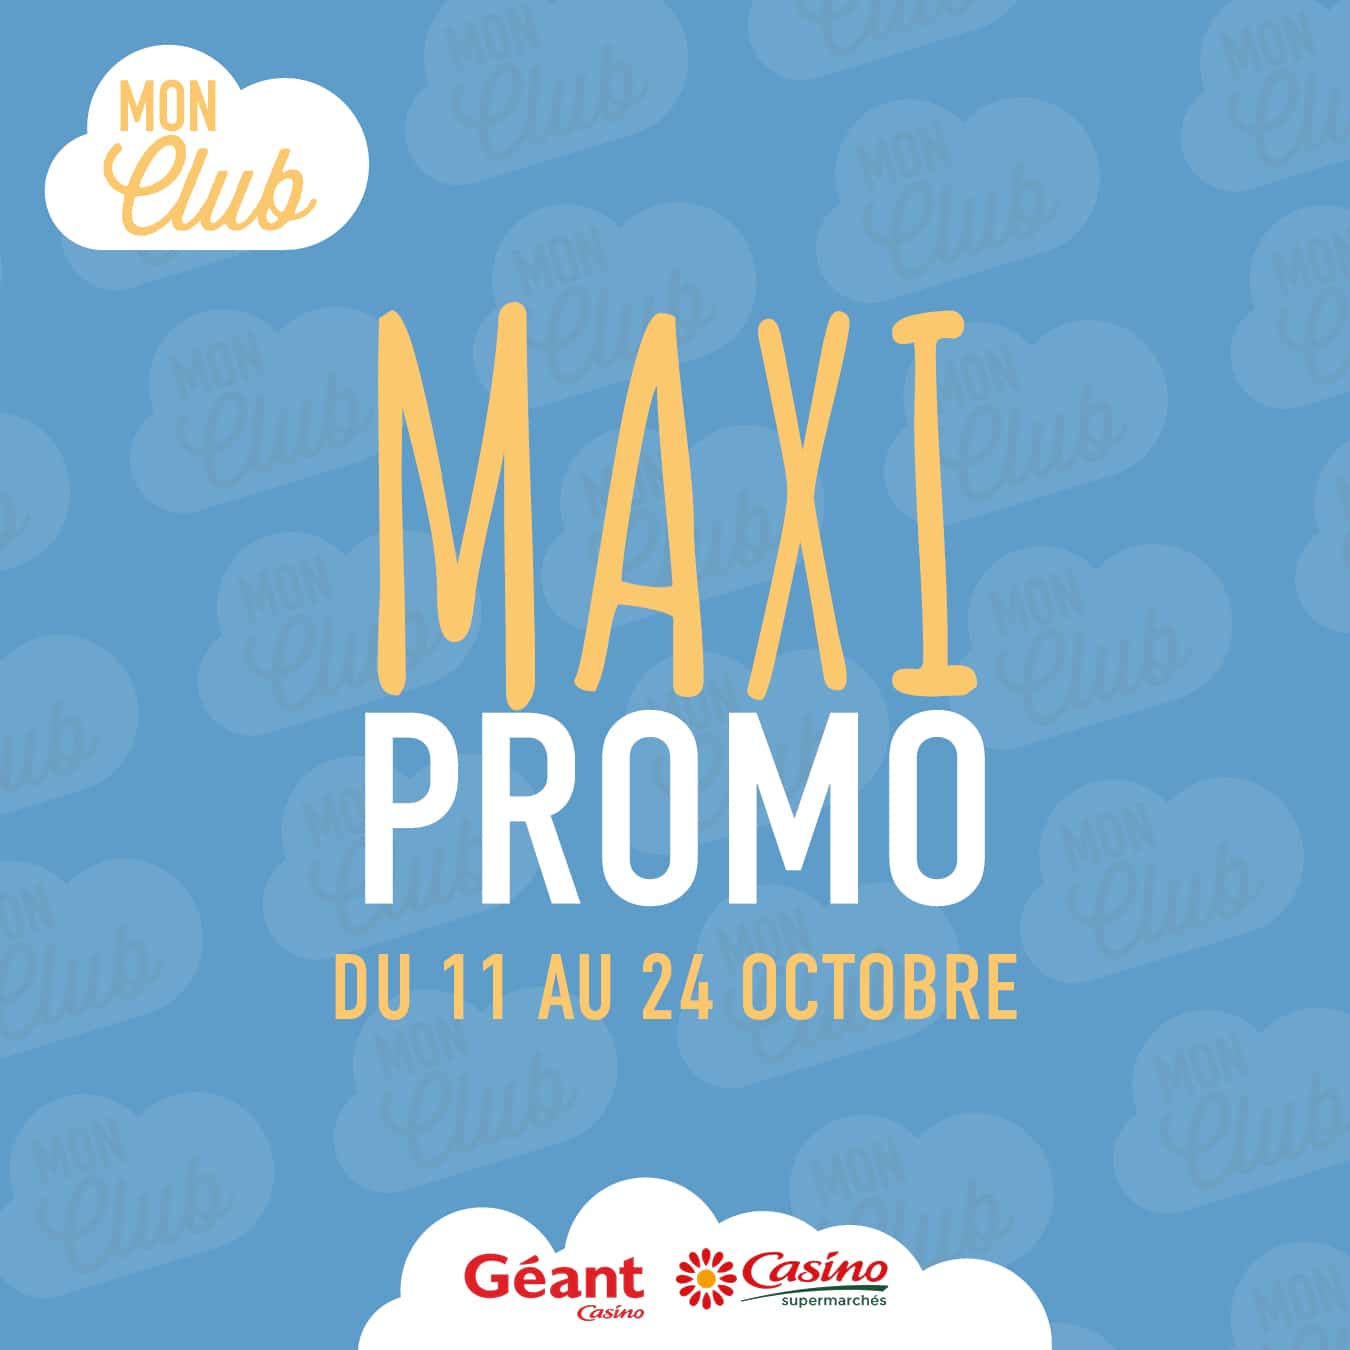 Les Maxi Promo continuent !